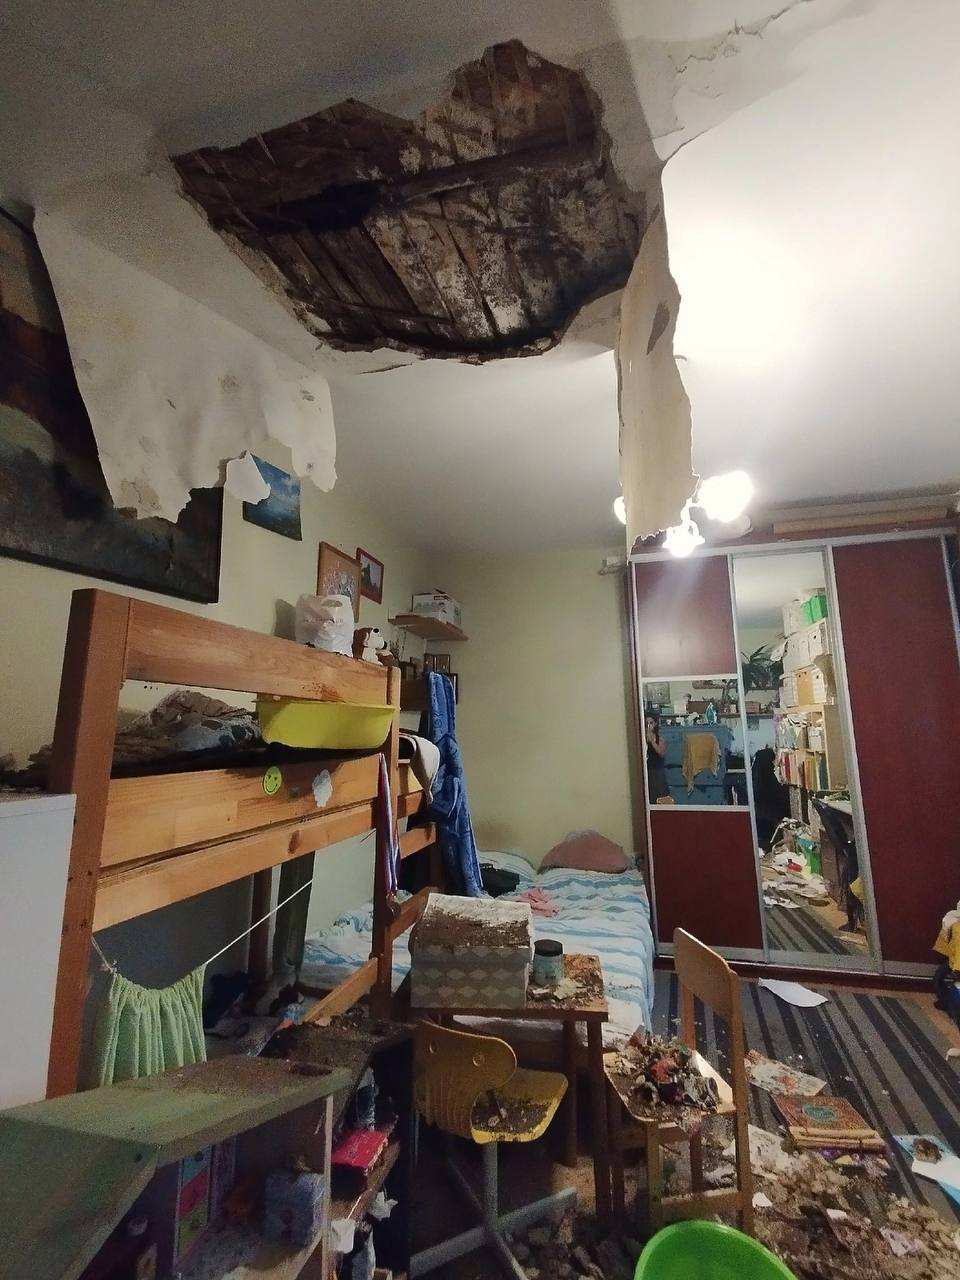 Детей едва не придавил рухнувший потолок в квартире в Нижнем Новгороде